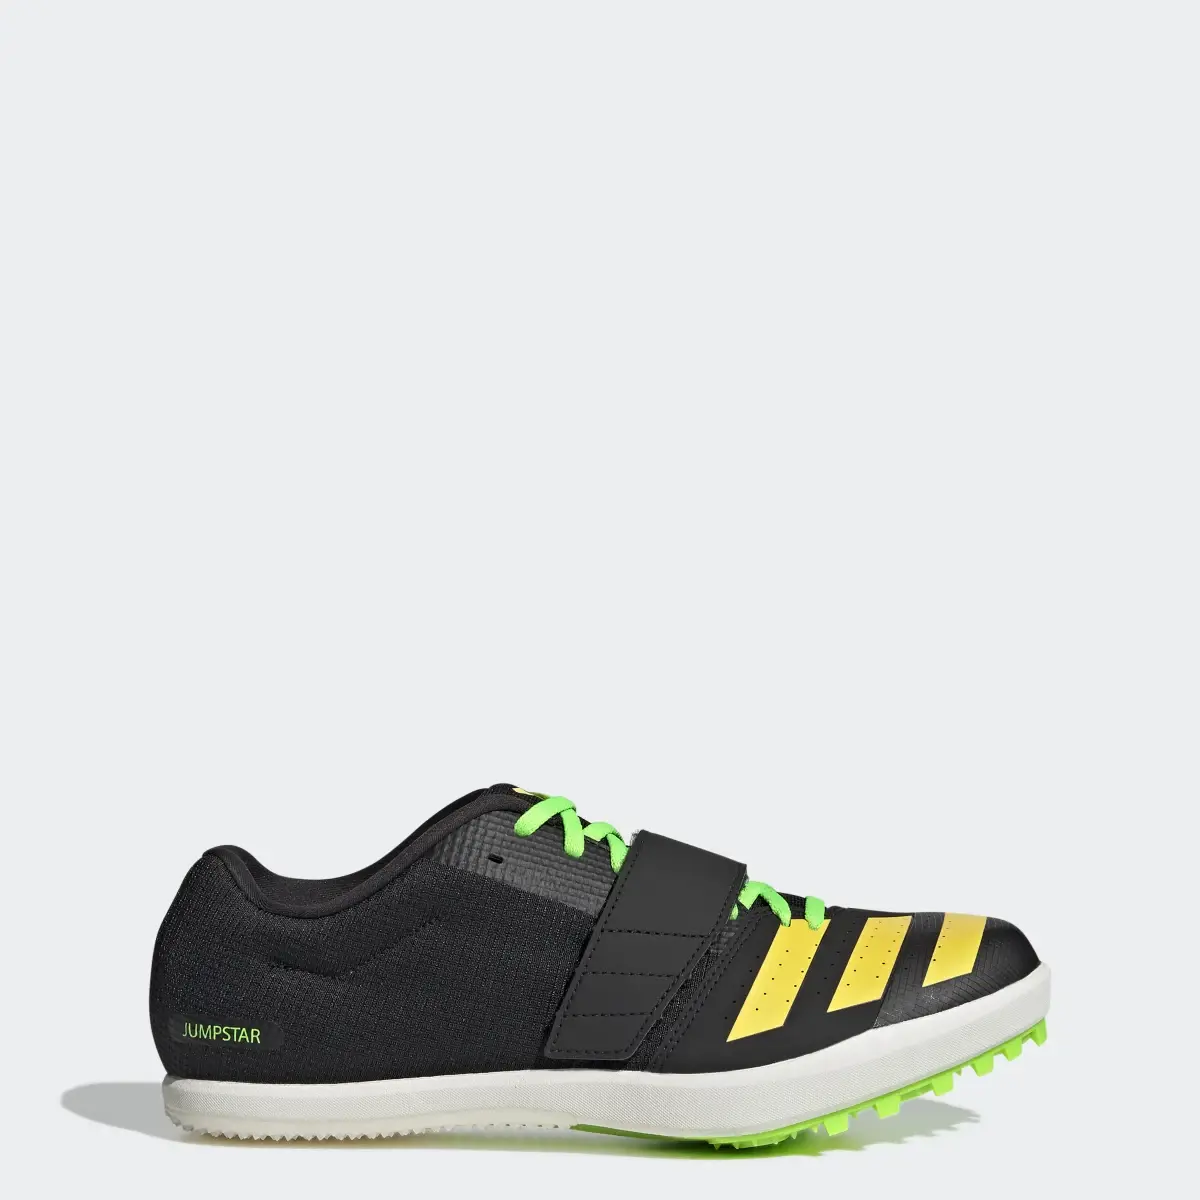 Adidas Jumpstar Shoes. 1